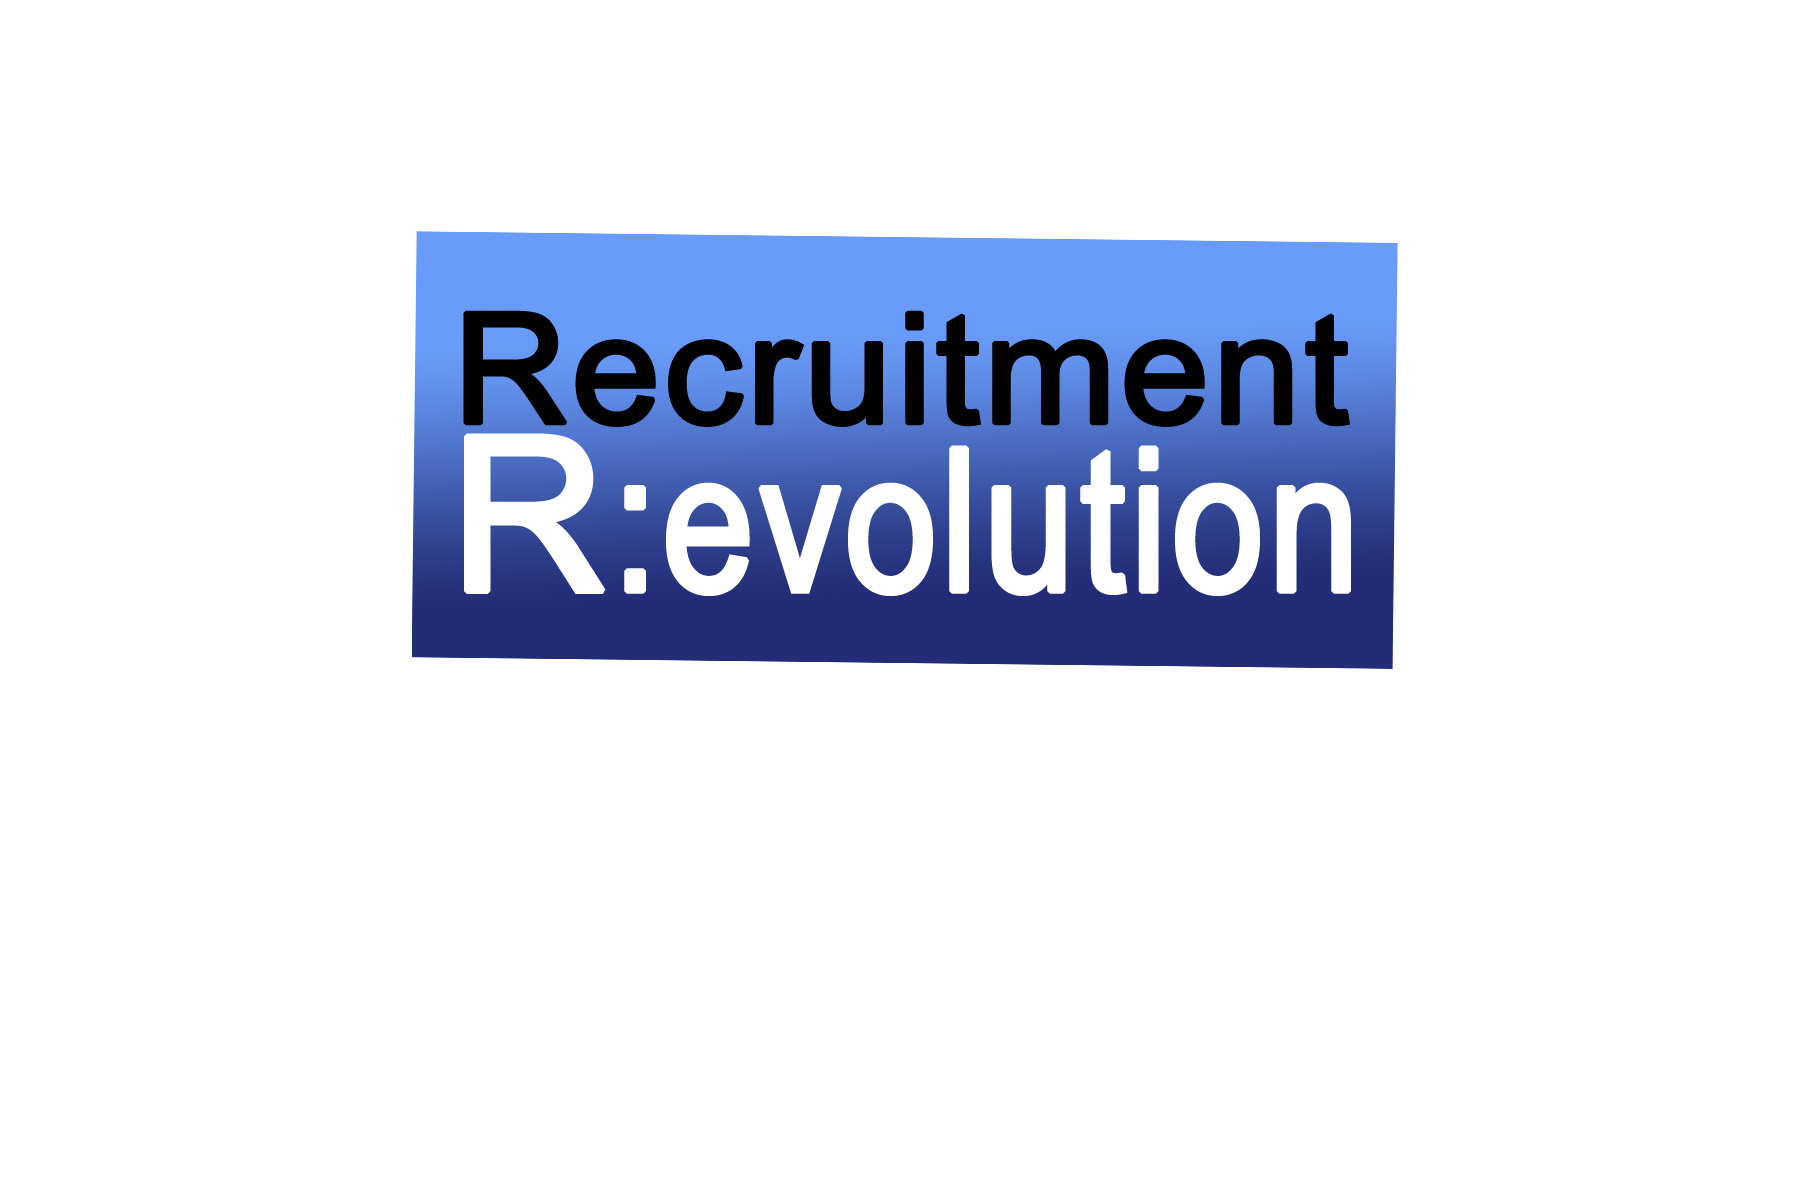 Recruitmentrevolution - logo.blue.jpg